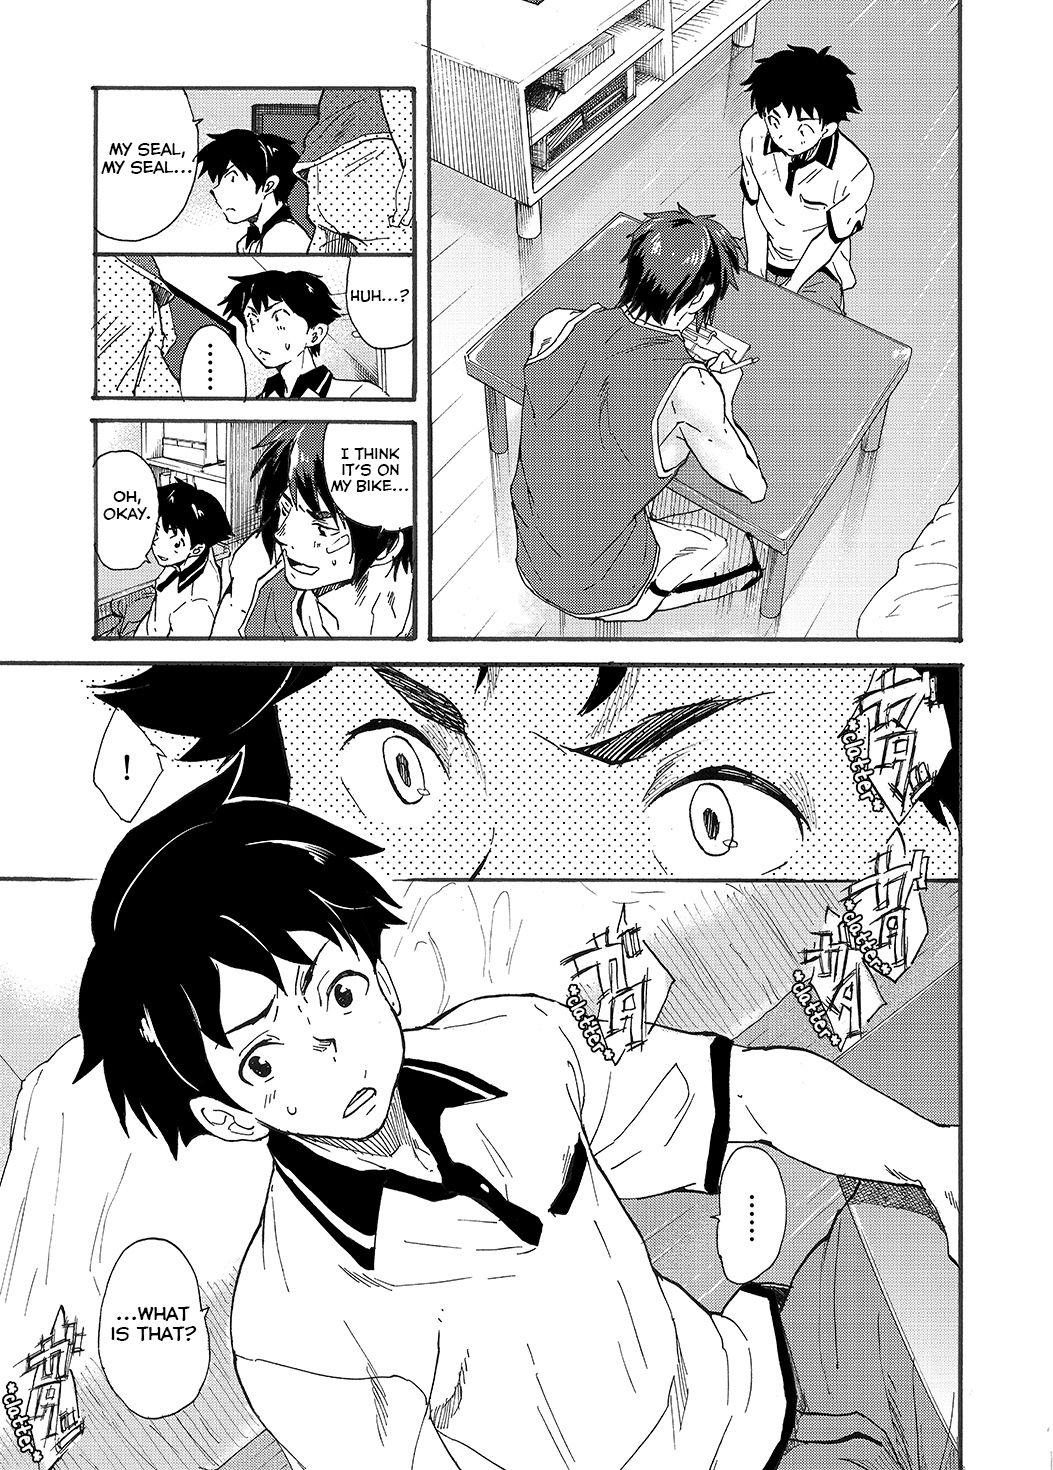  Machikado "Hitotsubashi Arata" - Original Behind - Page 7